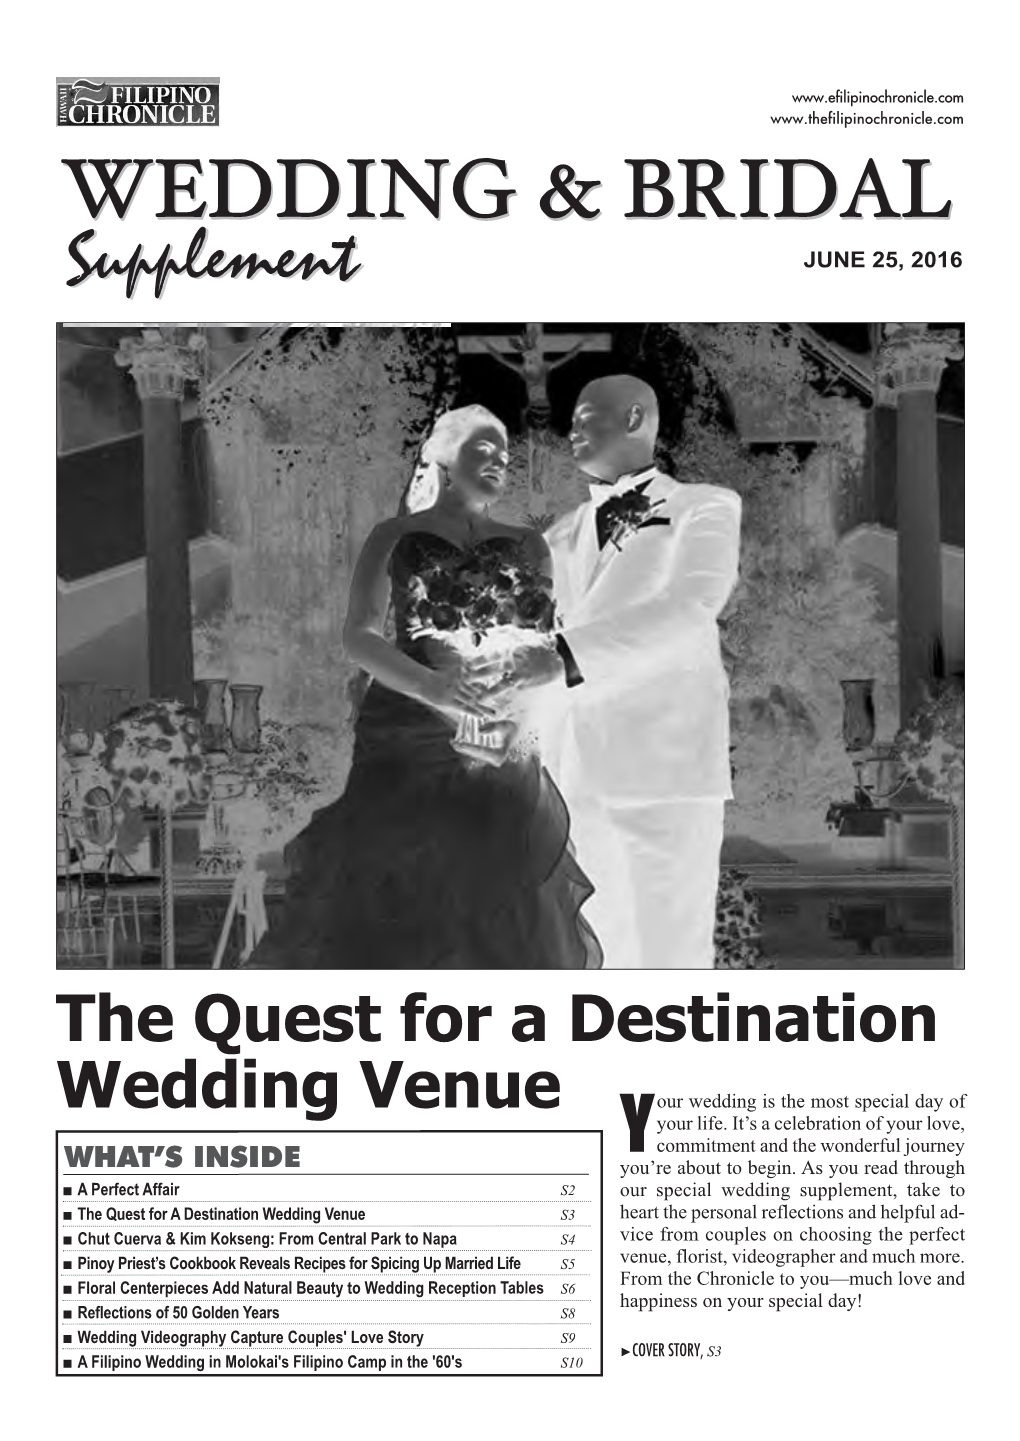 The Quest for a Destination Wedding Venue